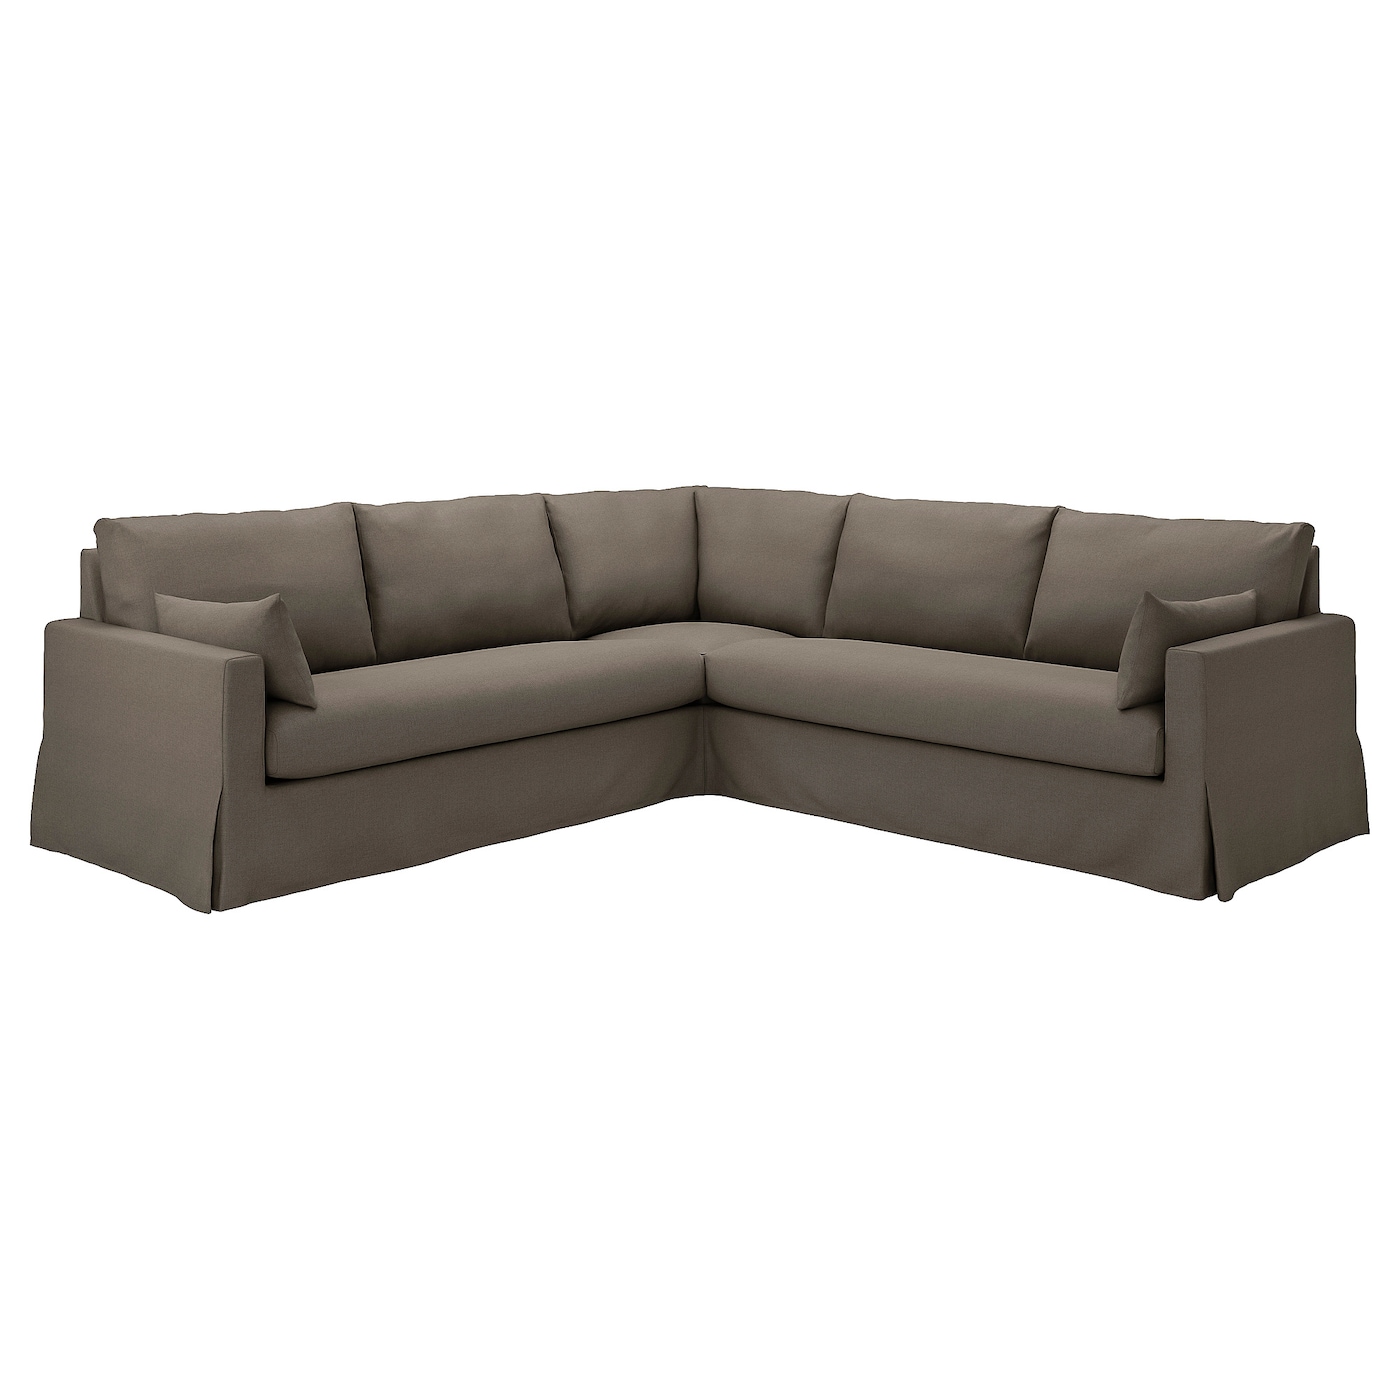 ХИЛТАРП 4-местный угловой диван, Грансель серо-коричневый HYLTARP IKEA